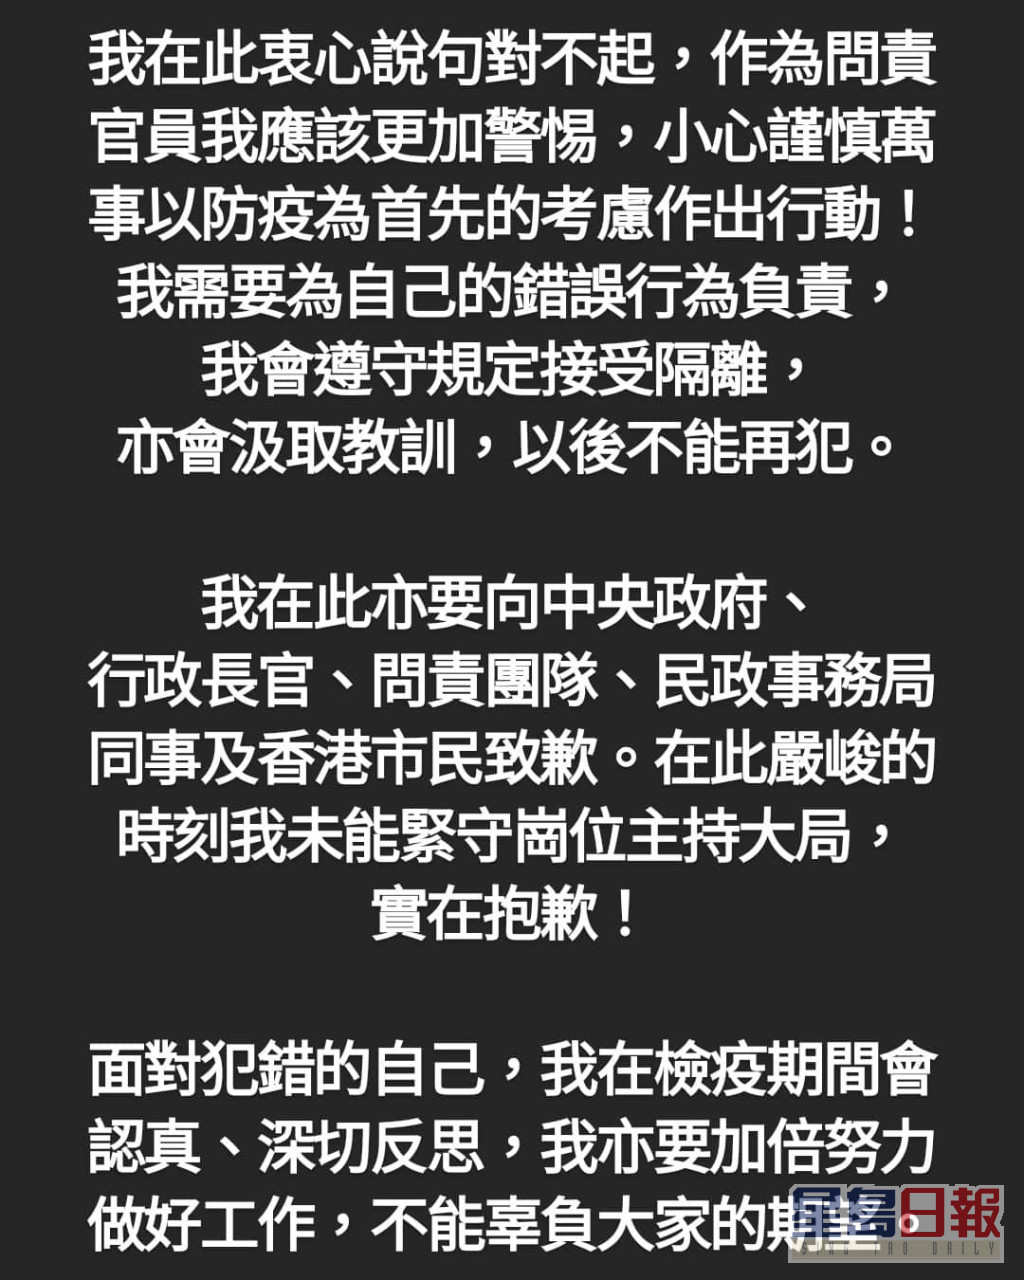 徐英偉社交平台發貼文道歉。